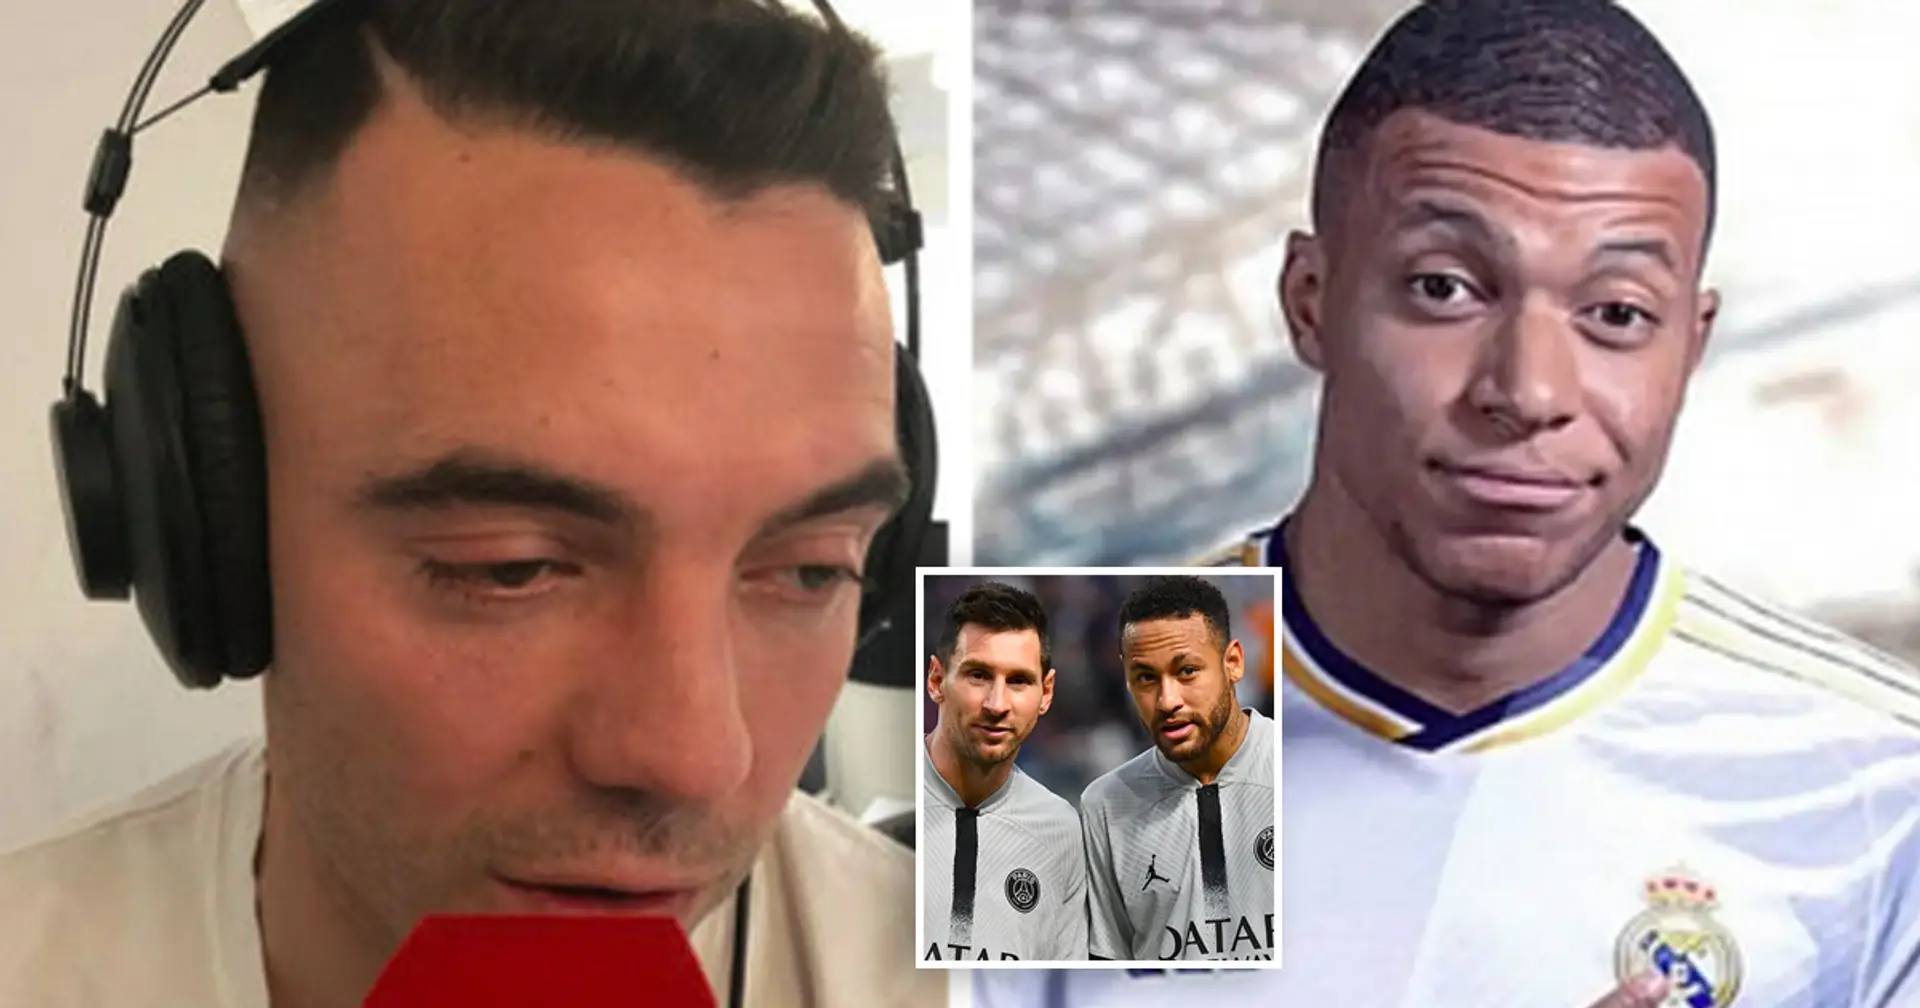 "Le PSG avec Messi et Neymar ressemblait aussi à une bombe": Iago Aspas relativise l'emballement autour du transfert de Mbappé